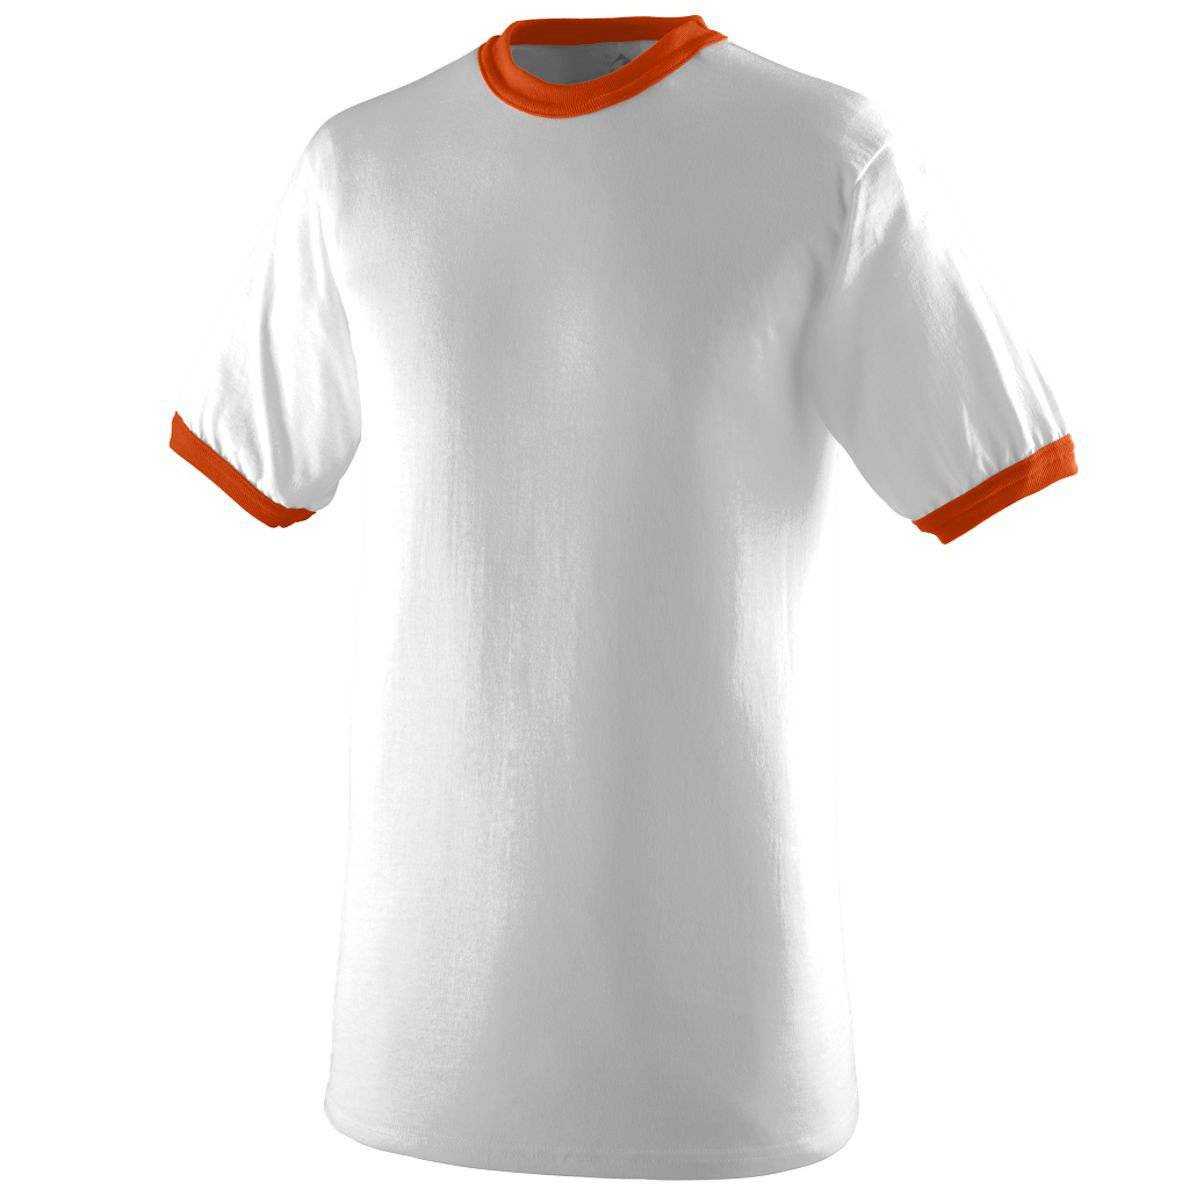 Augusta 710 Ringer T-Shirt - White Orange - HIT a Double